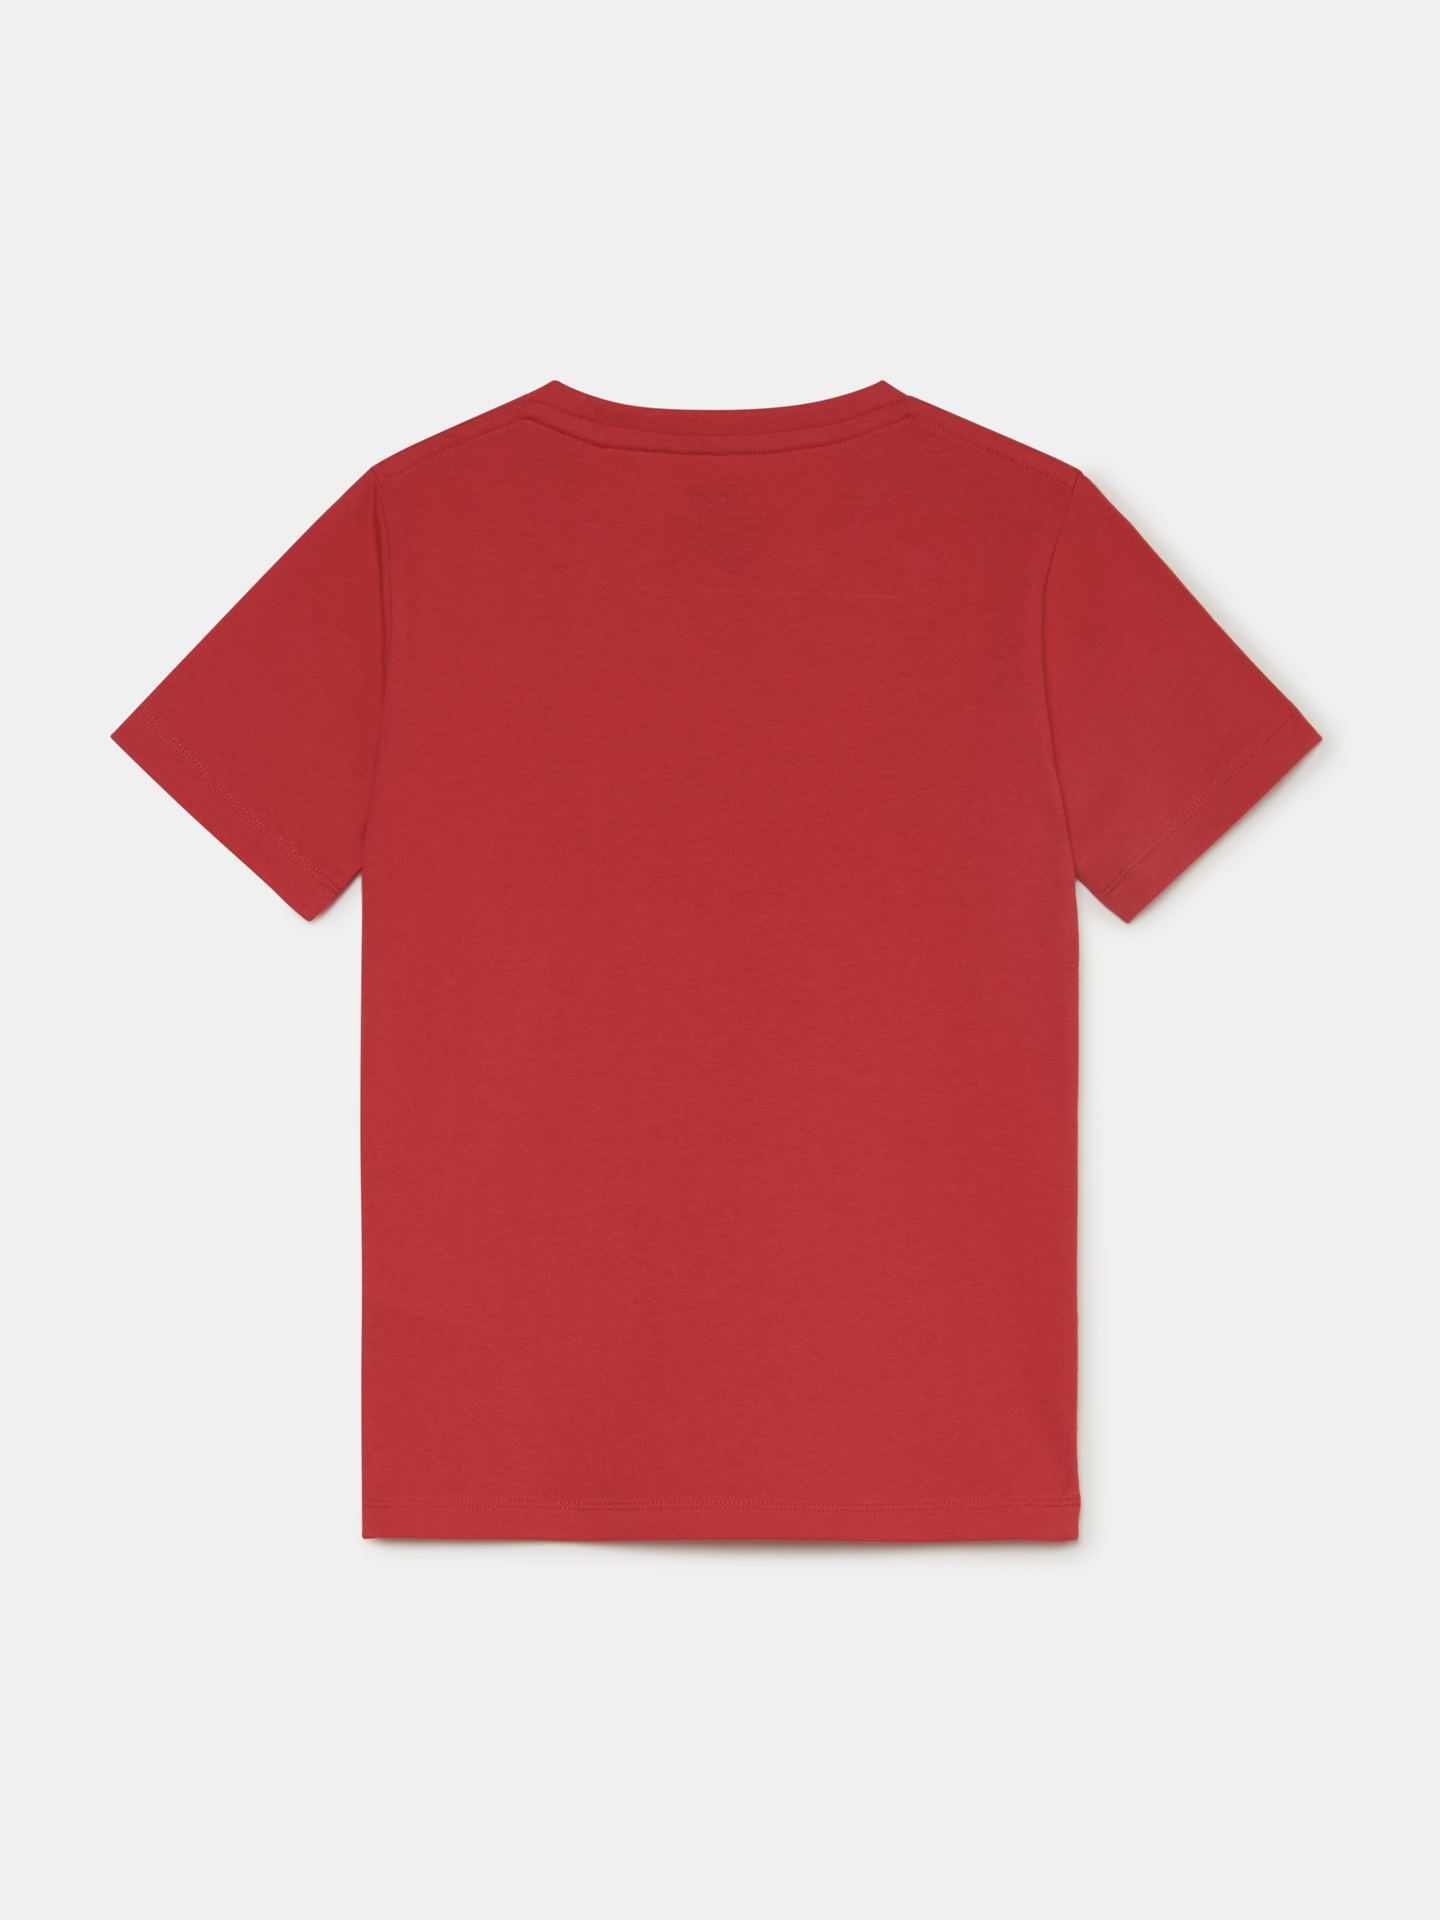 T-Shirt Red Sport Boy